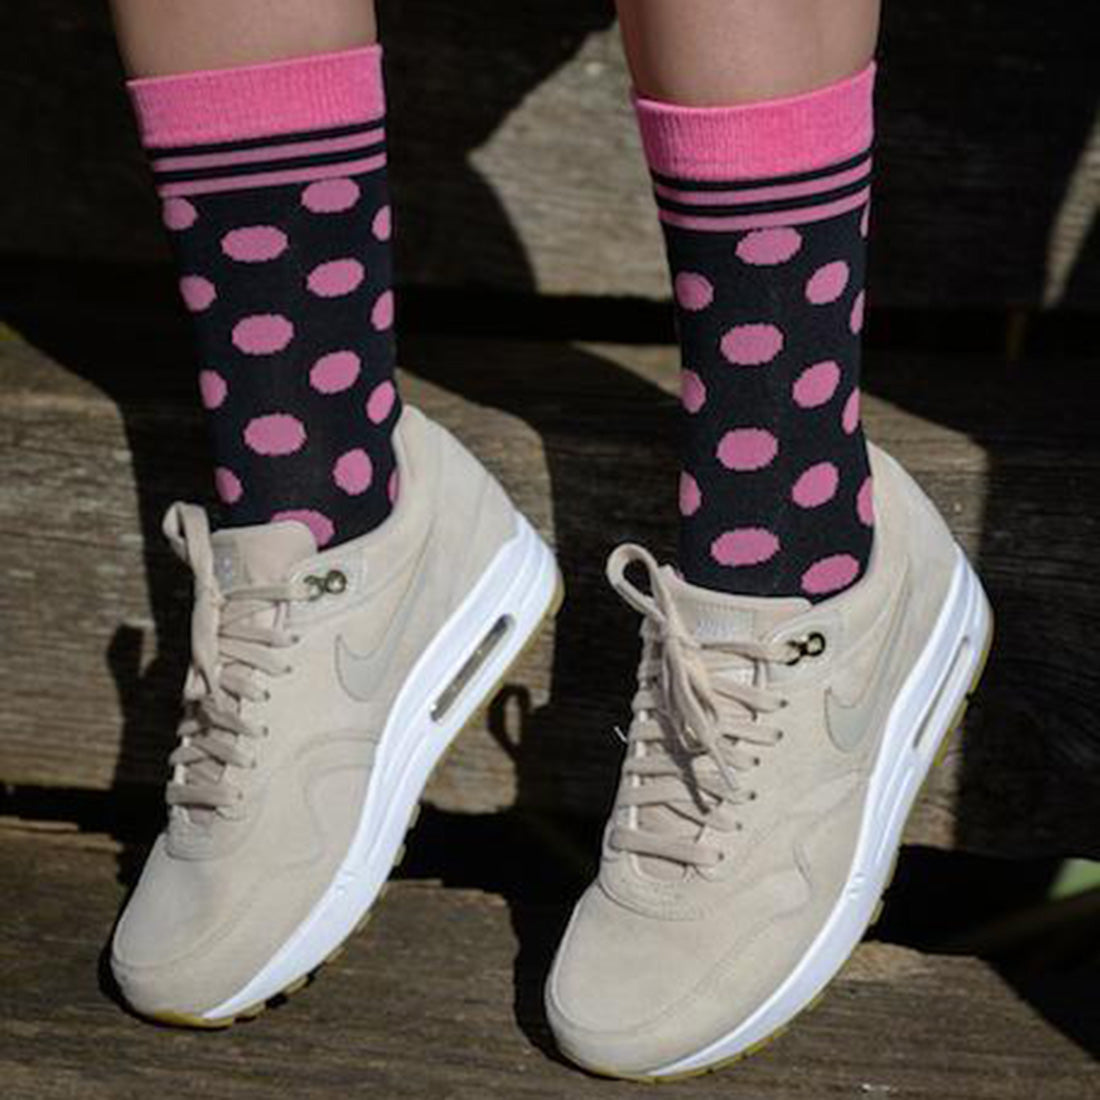 Black and Pink Polka Dot Bamboo Socks